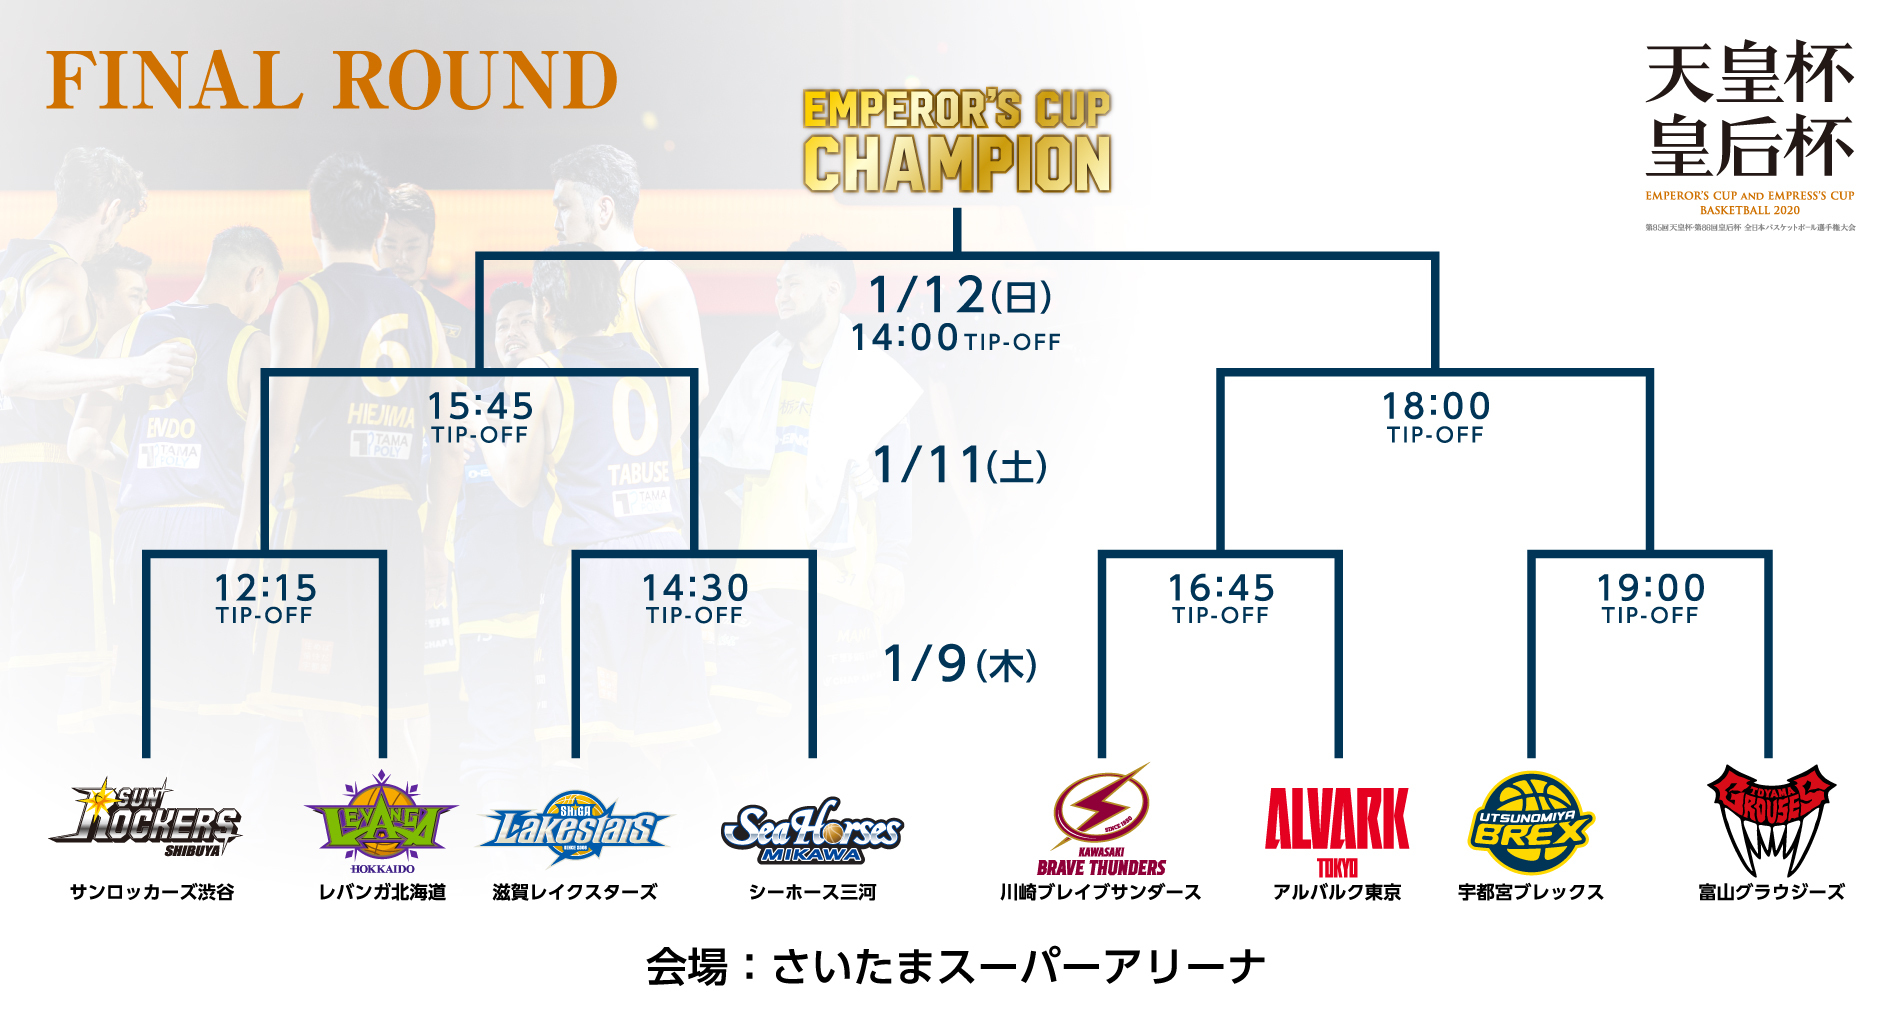 第95回天皇杯 全日本バスケットボール選手権大会 ファイナルラウンド 組み合わせ決定のお知らせ 宇都宮ブレックス